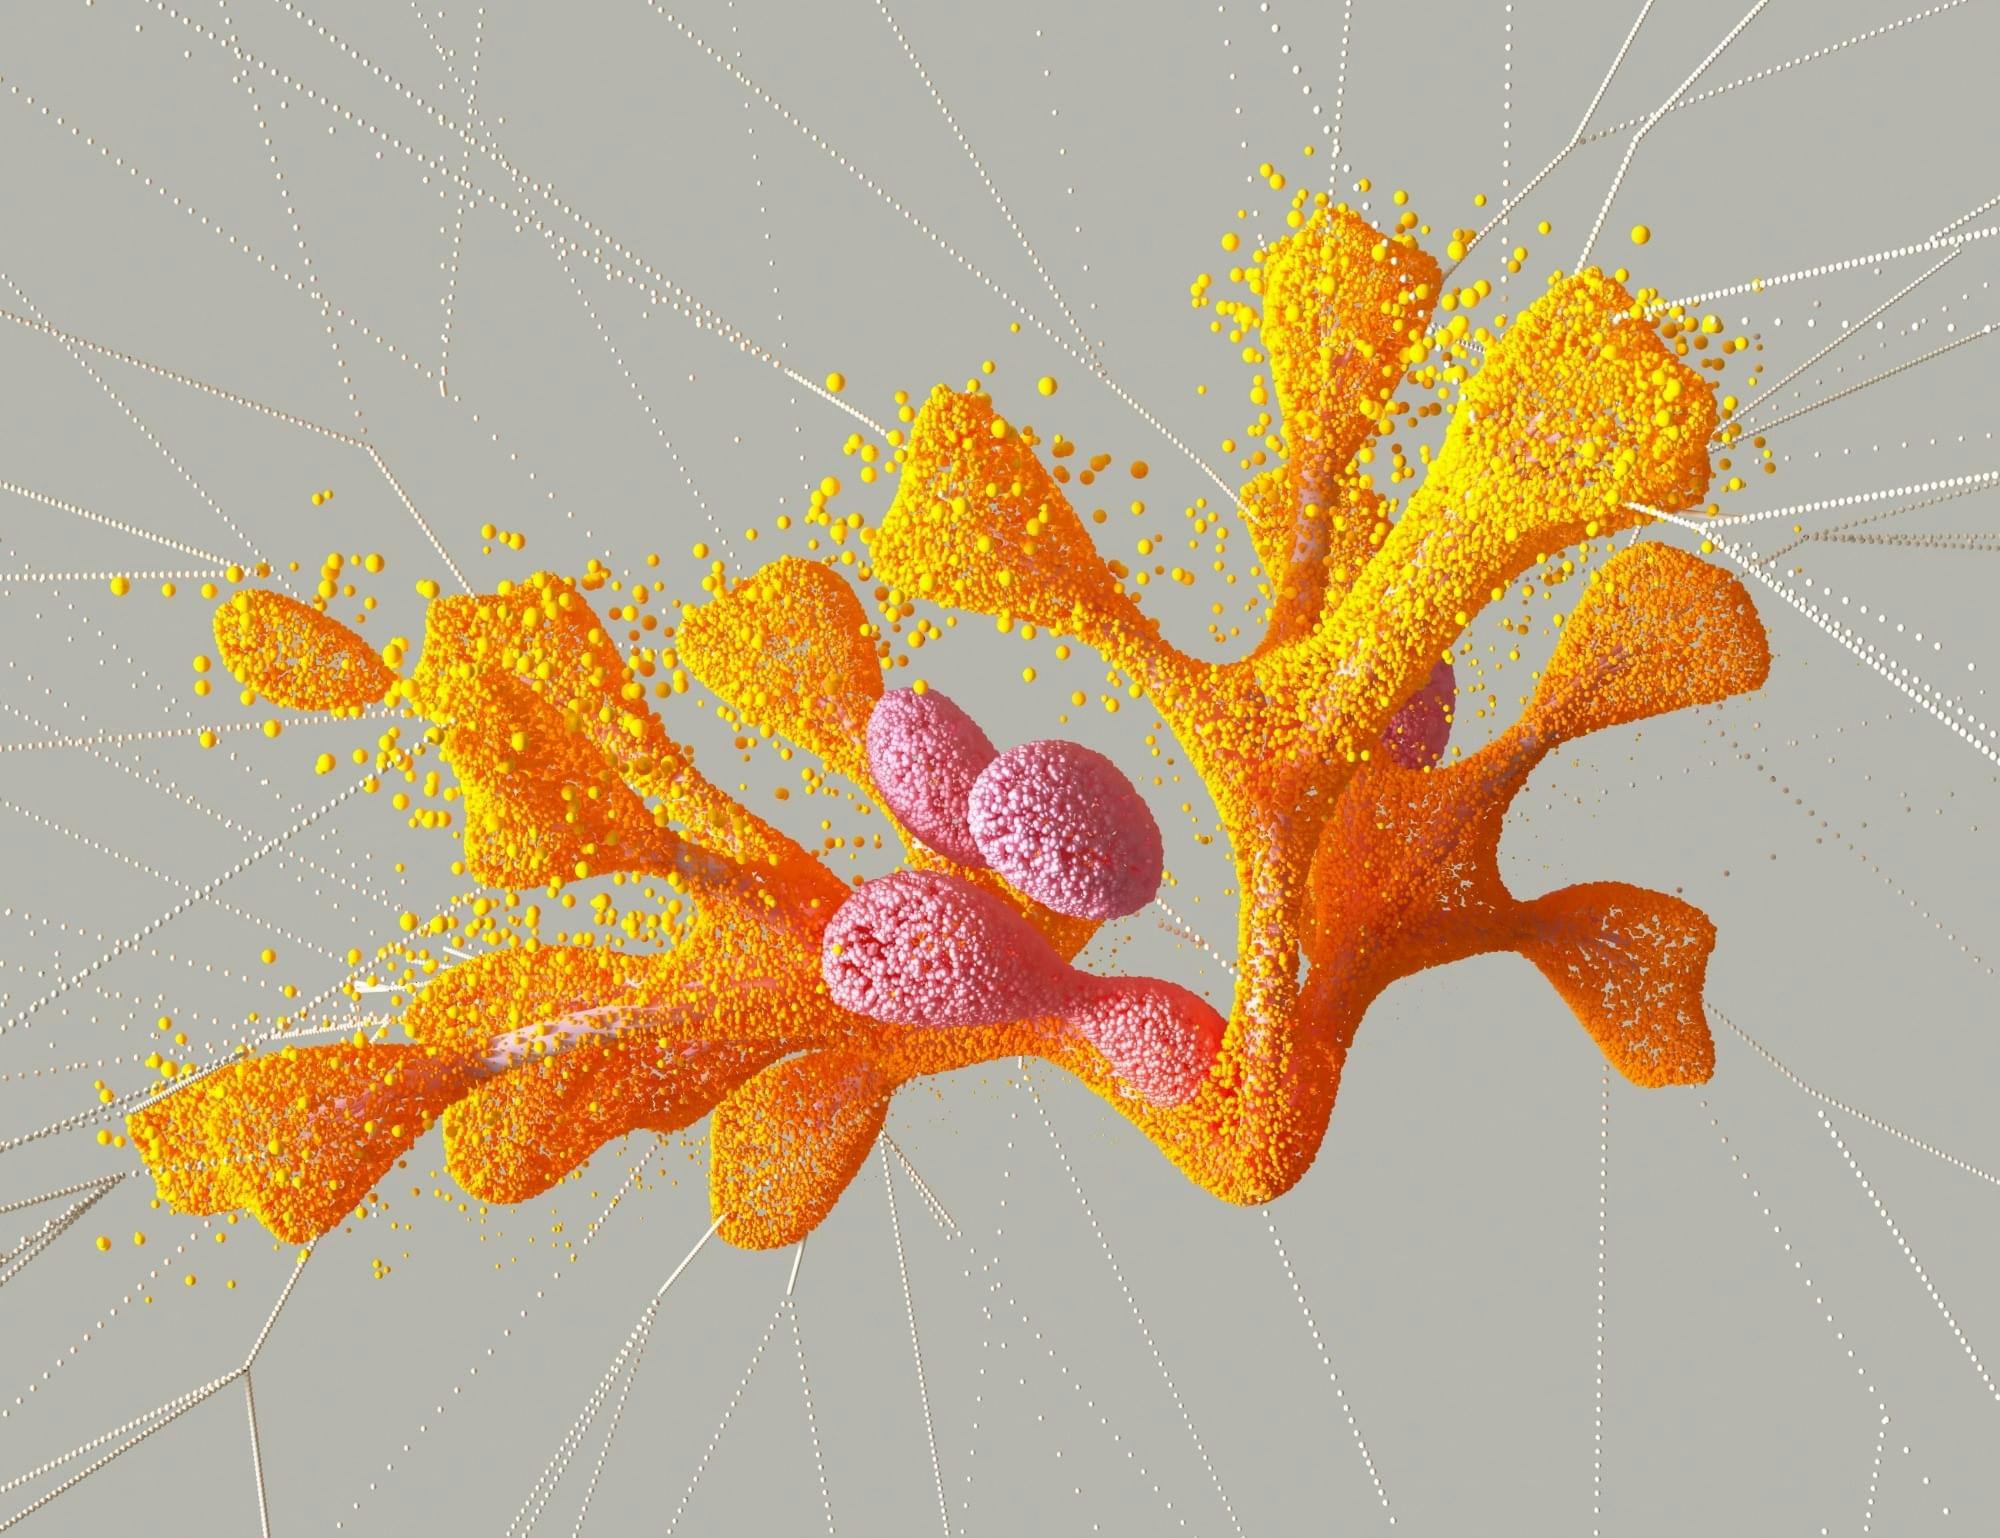 Abstracte digitale kunst in oranje en roze, lijkt op koraal.